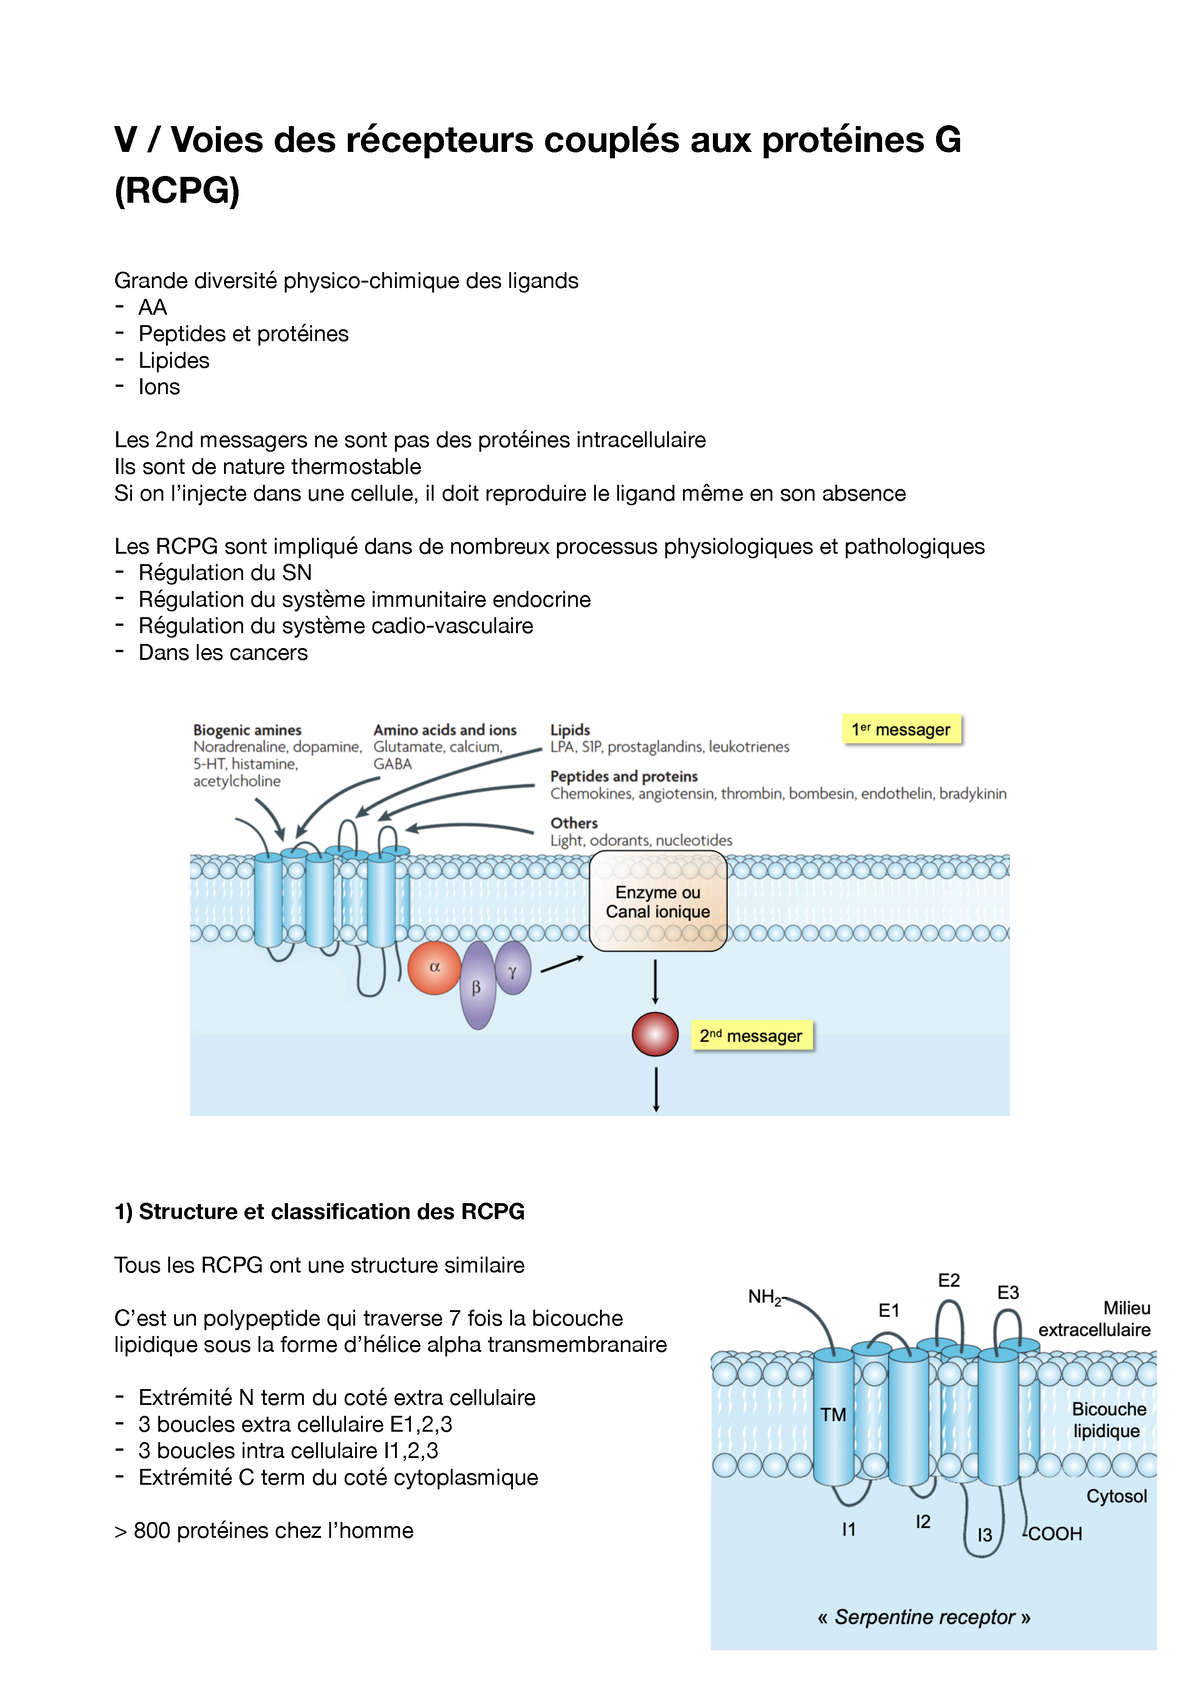 Récepteurs couplés aux protéines G